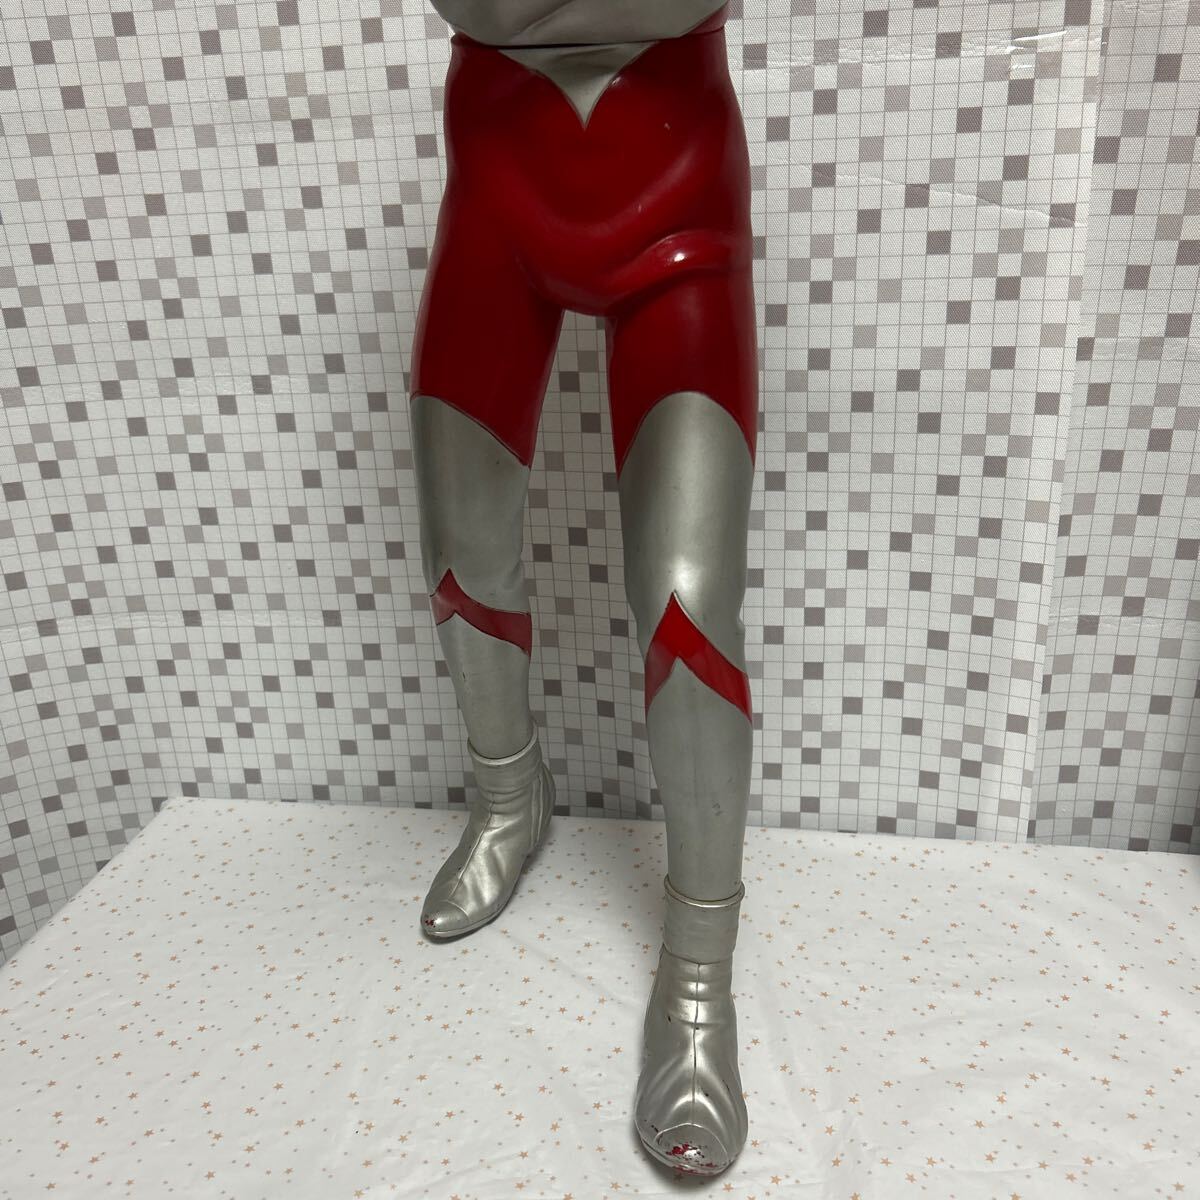 grooja Ian to шкала Ultraman огромный большой очень большой большой размер sofvi фигурка высота примерно 63cm